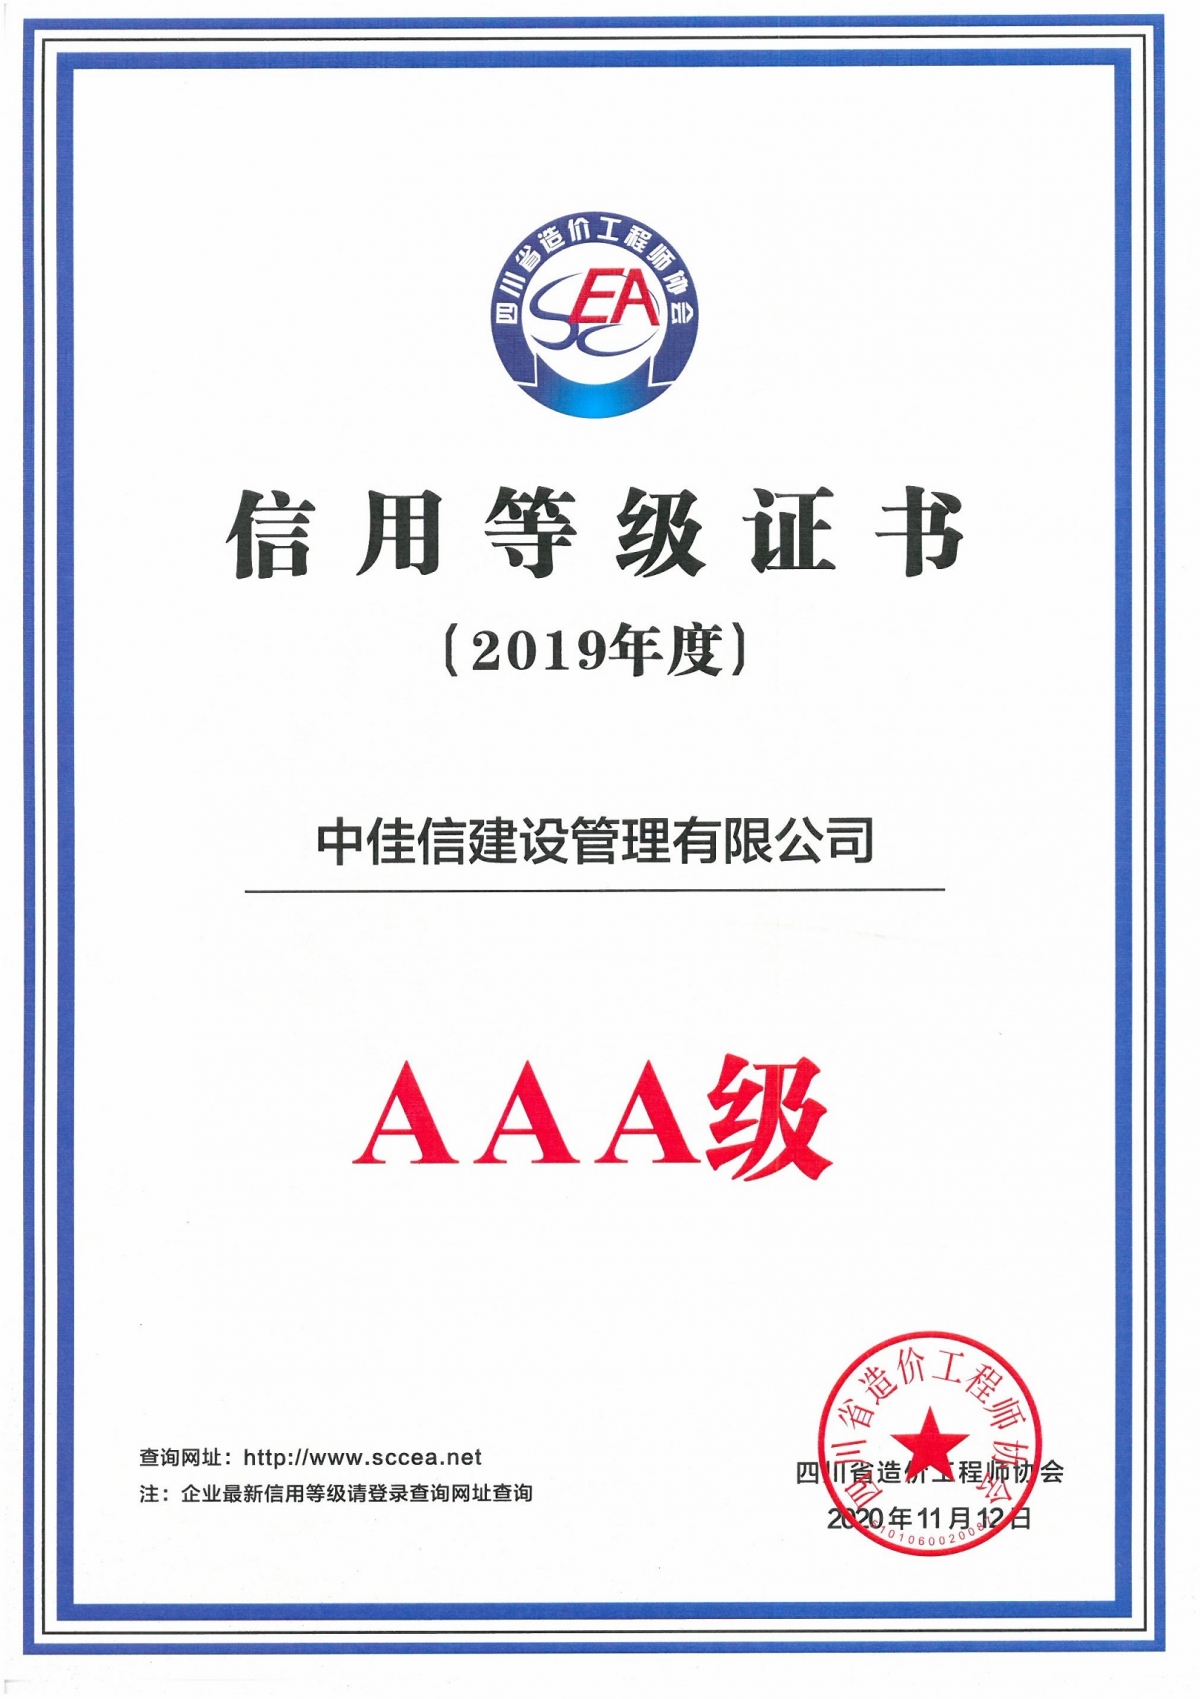 2019年度省造价师协会AAA证书-小.jpg